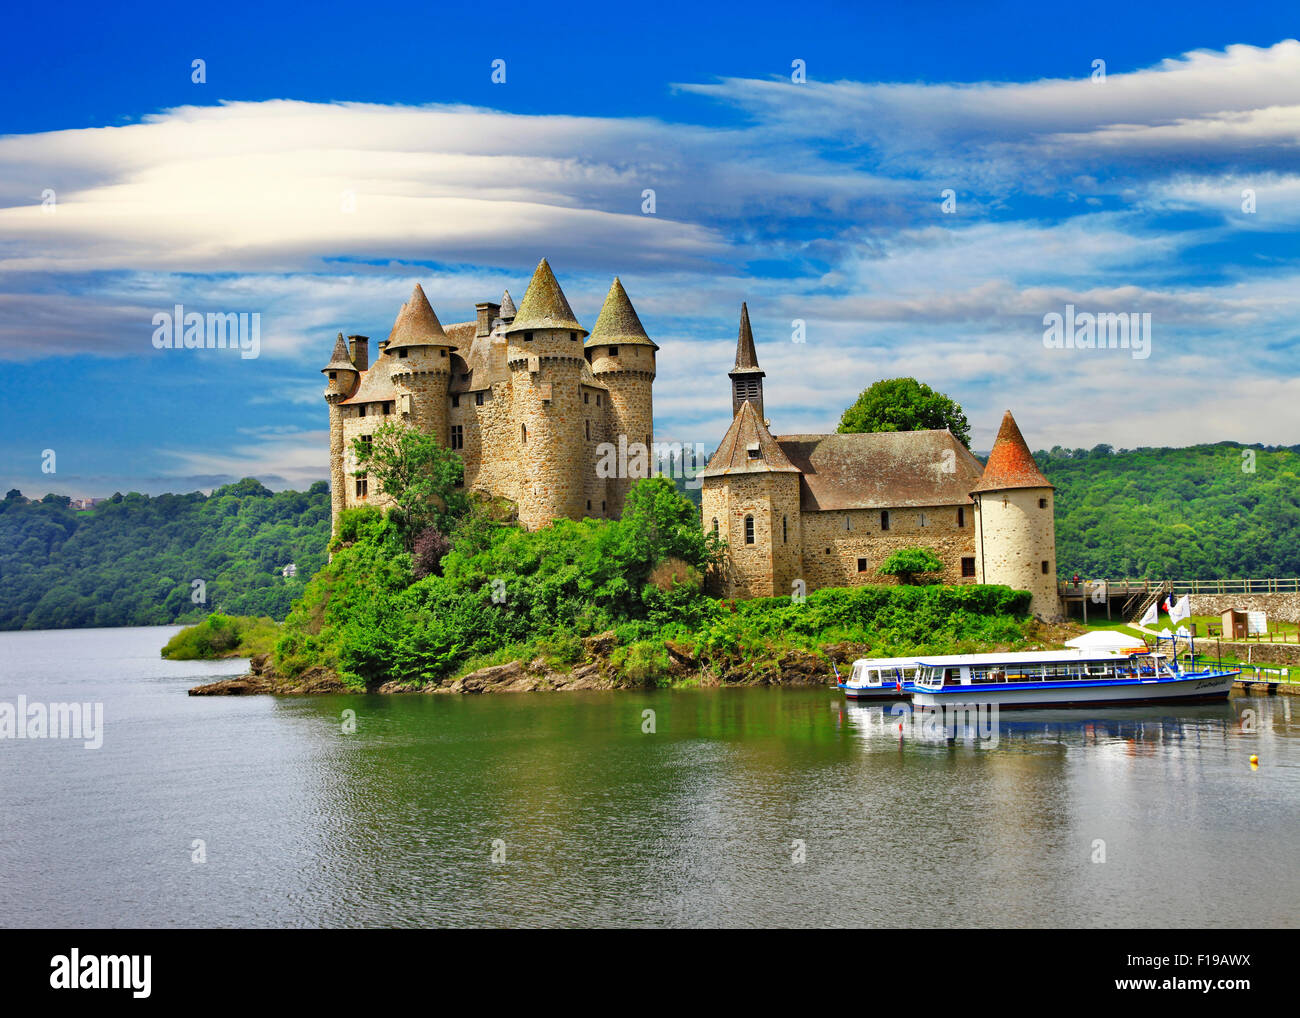 Romantici castelli medievali di Francia - Chateau de Val Foto Stock